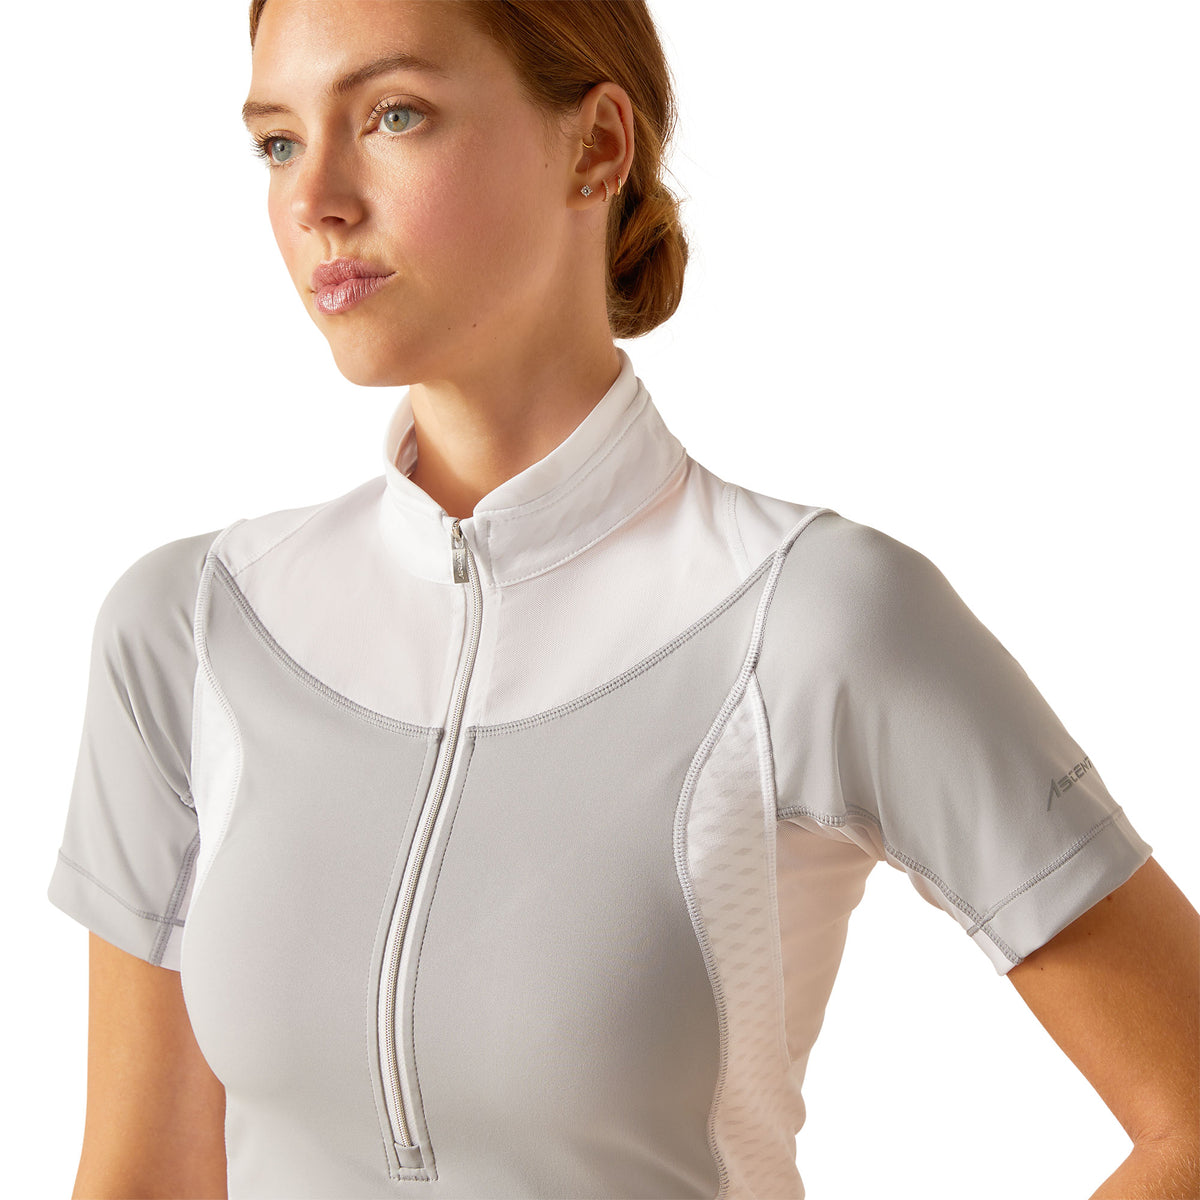 Ariat Women's Ascent 1/4 Zip Short Sleeve Show Shirt